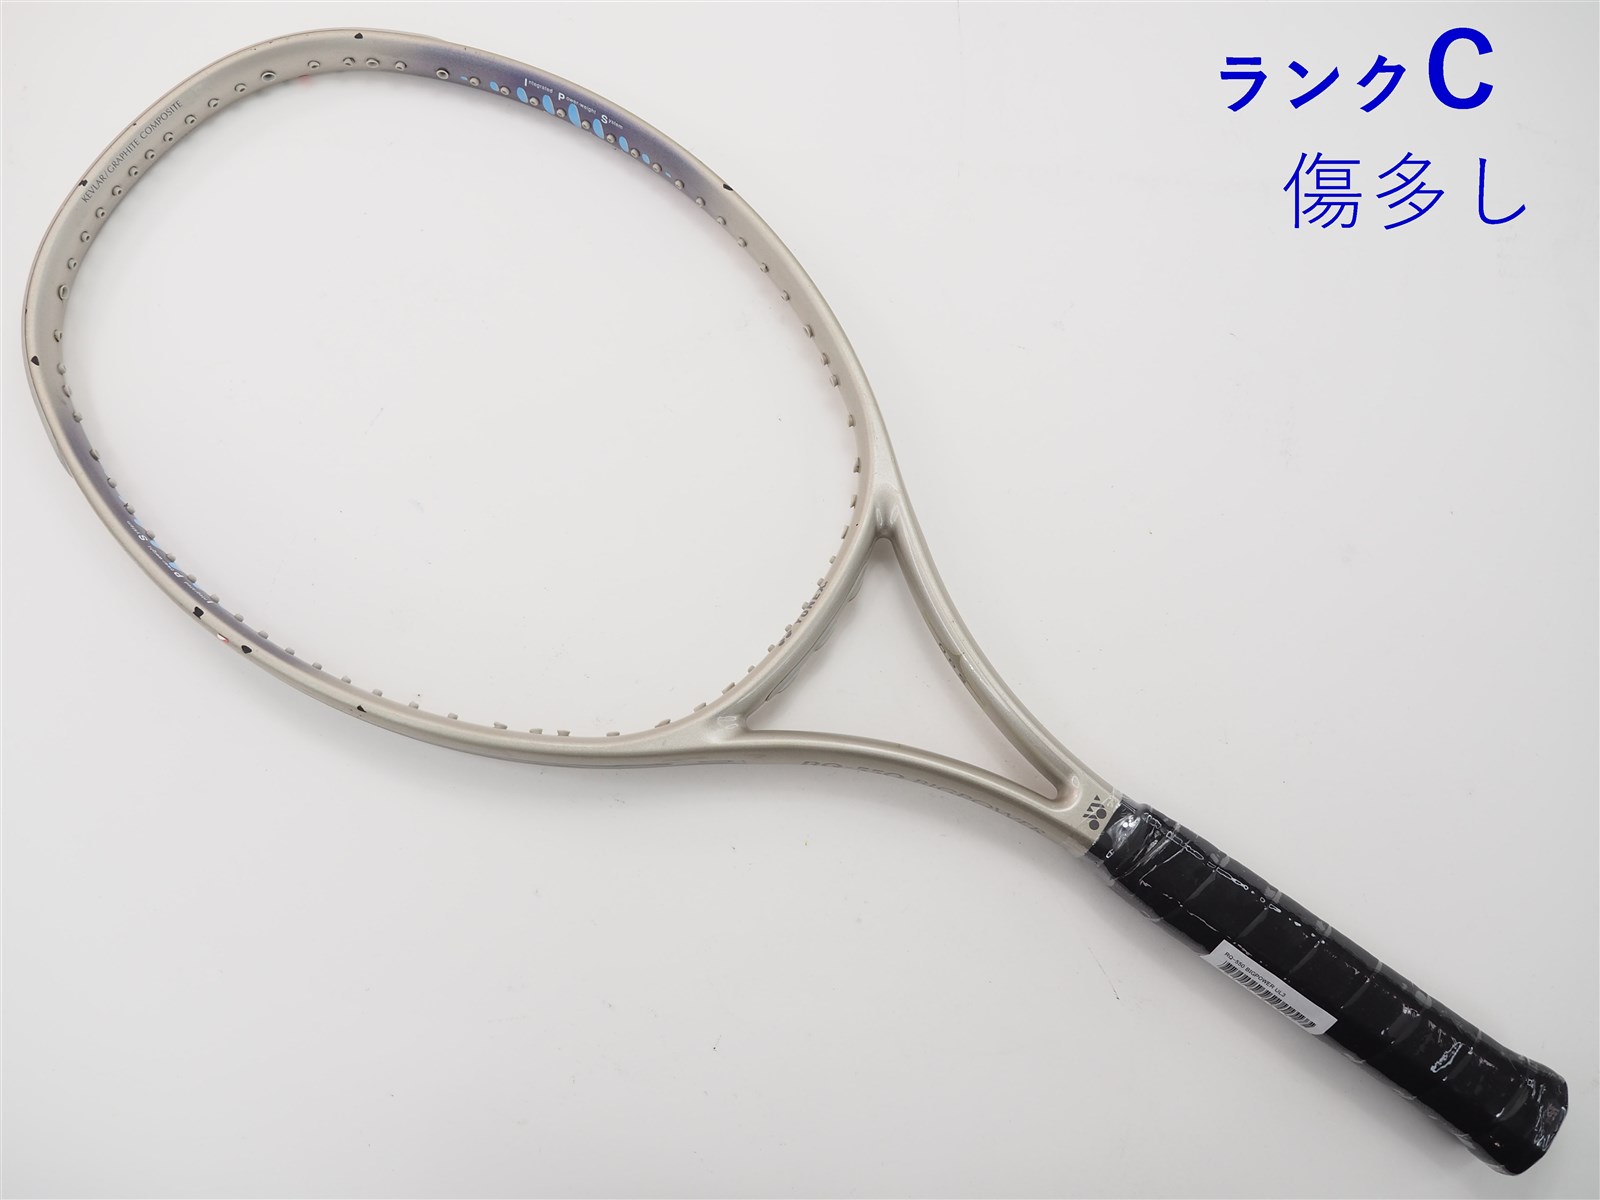 テニスラケット ヨネックス RQ-350 ビッグスリム (UL2)YONEX RQ-350 BIGSLIM